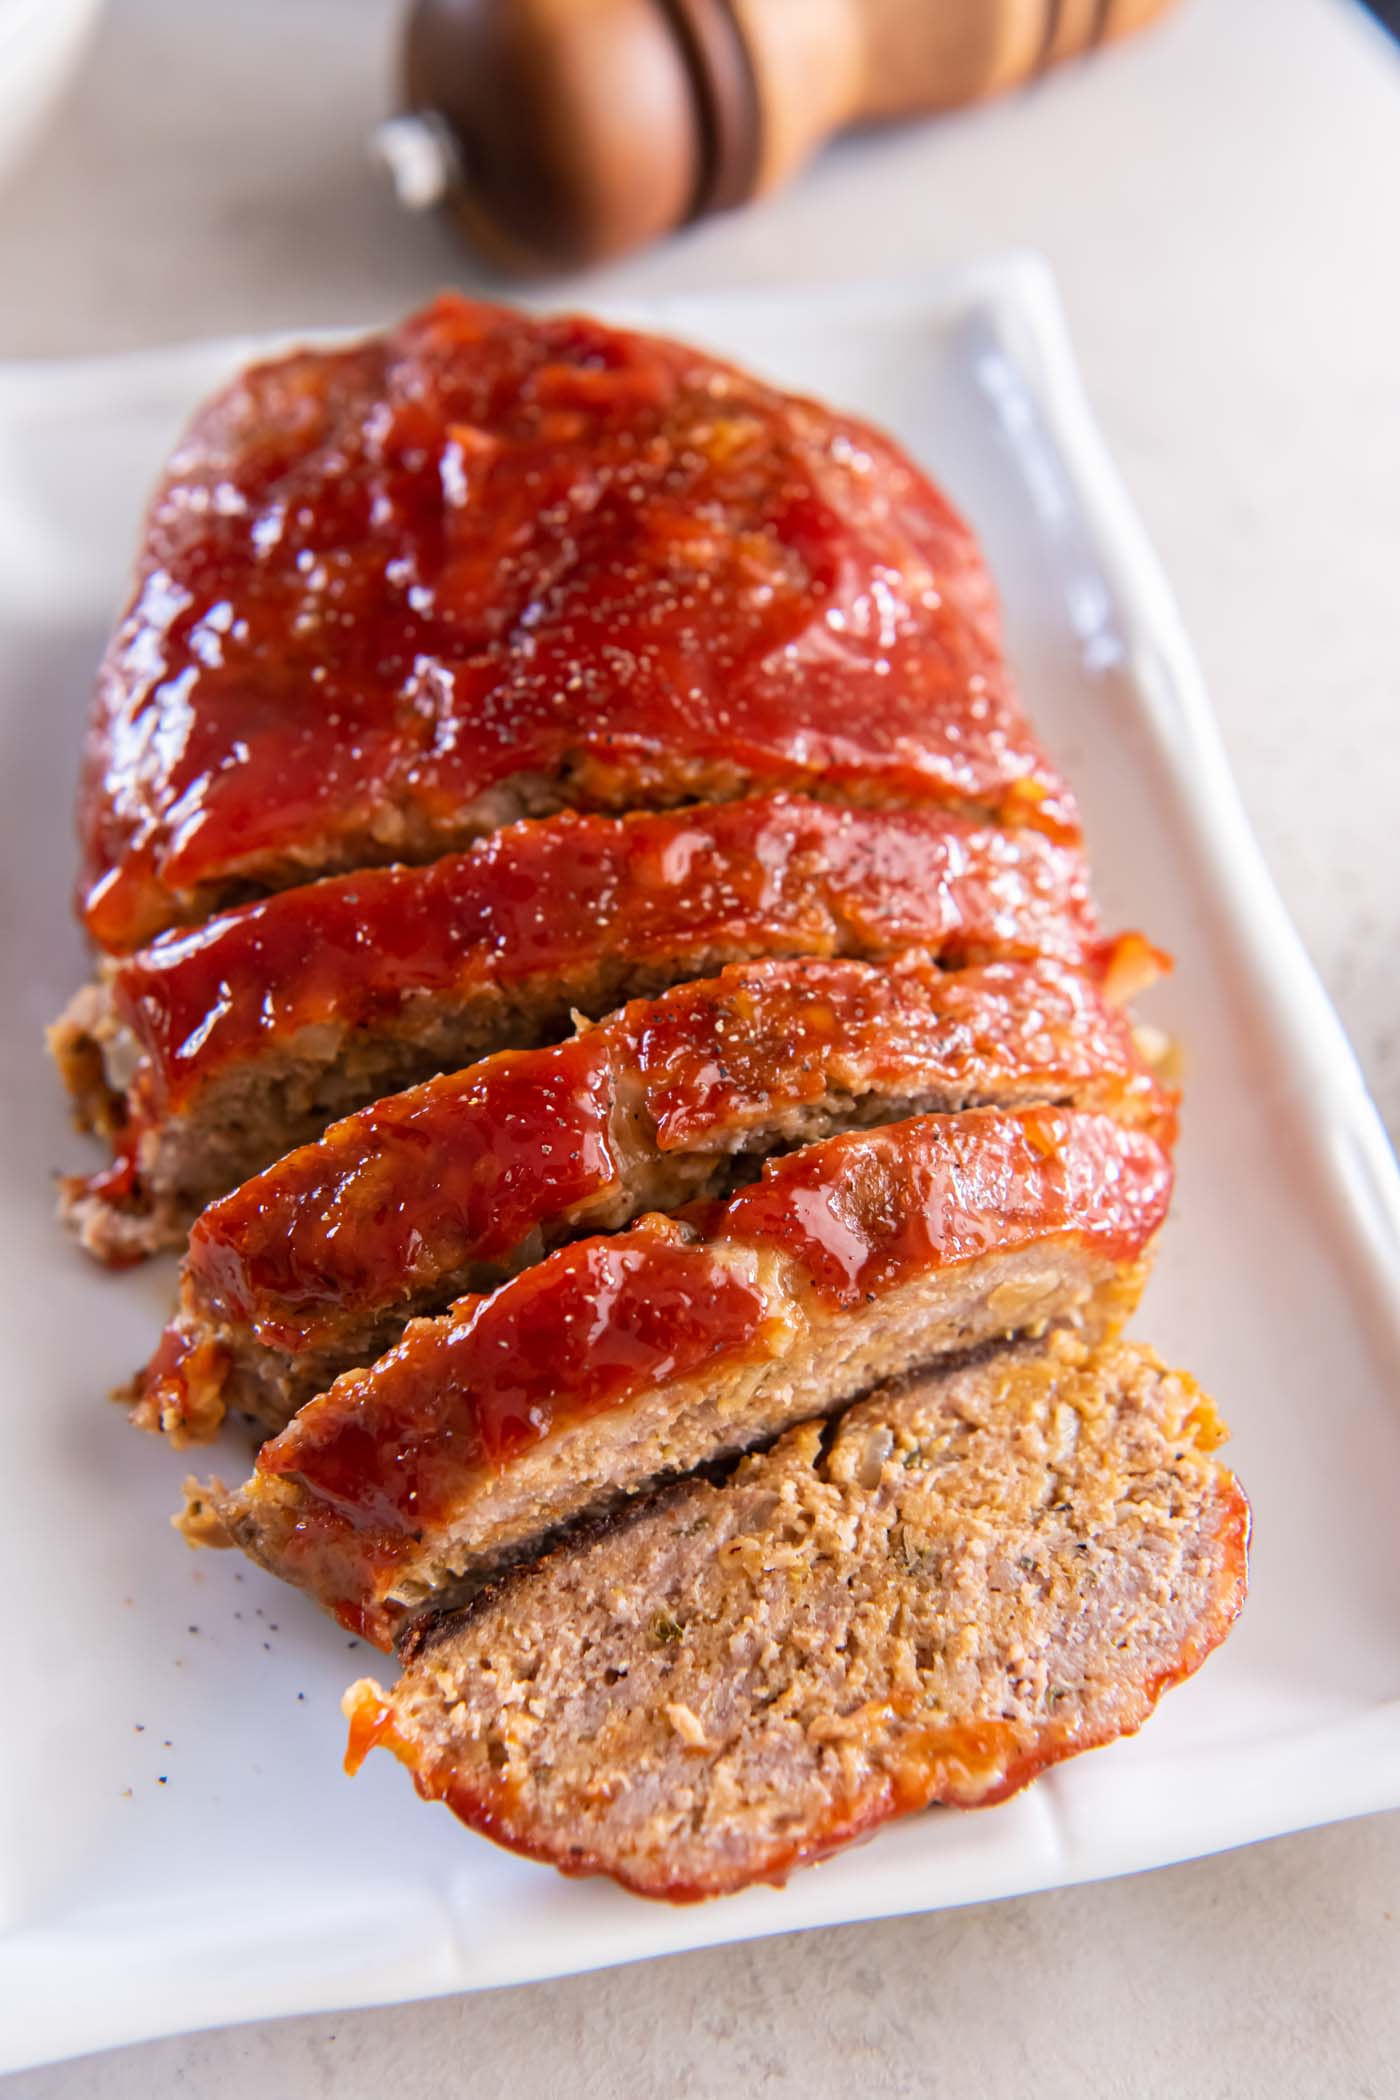 https://kristineskitchenblog.com/wp-content/uploads/2023/03/turkey-meatloaf-recipe-12-2.jpg